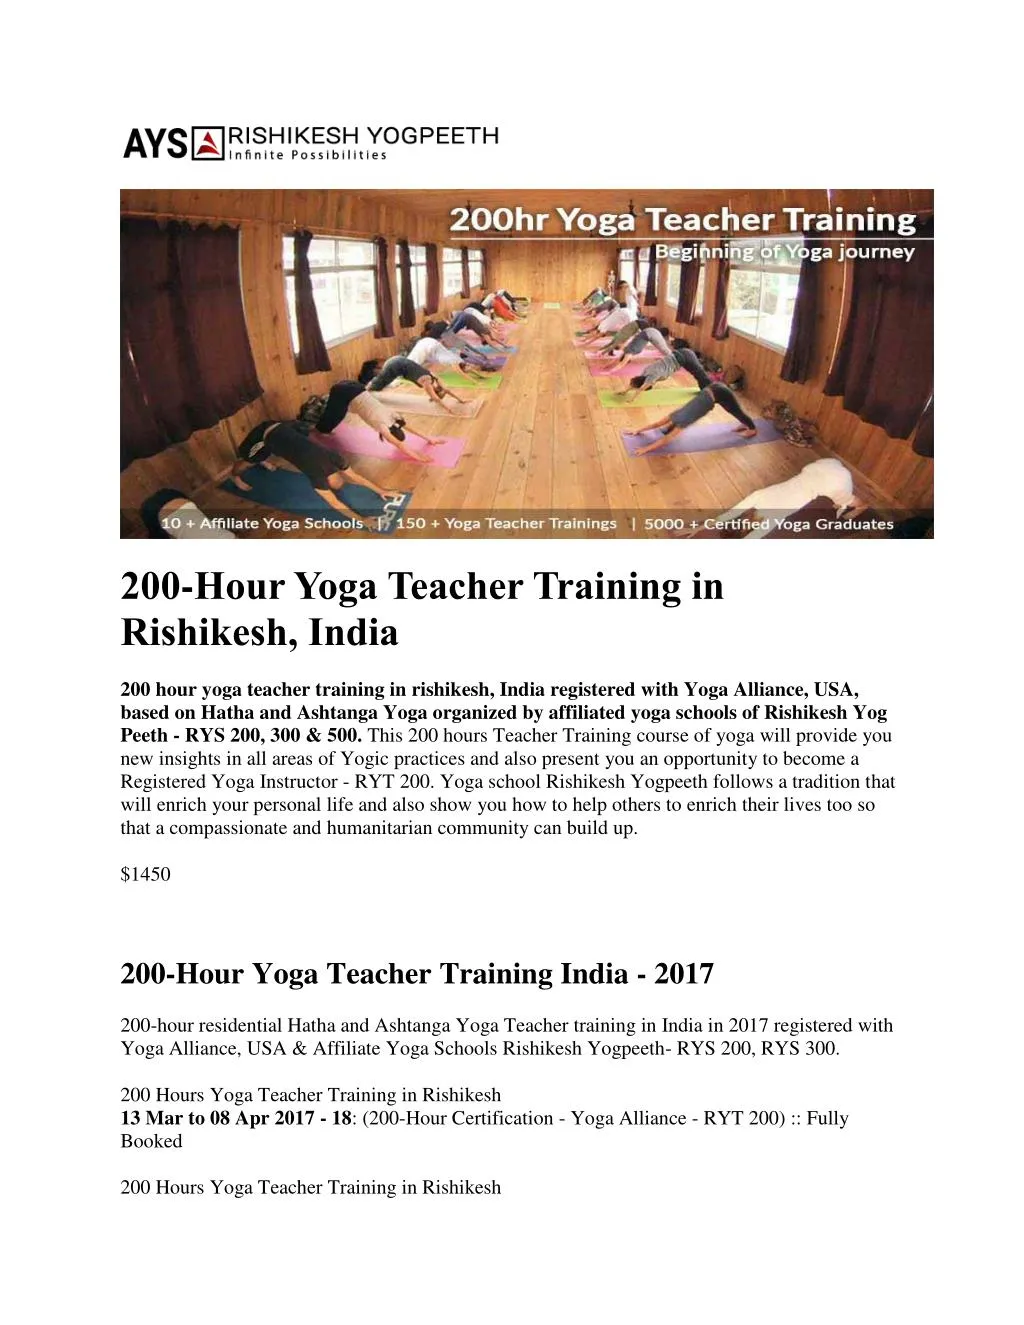 200 hour yoga teacher training in rishikesh india